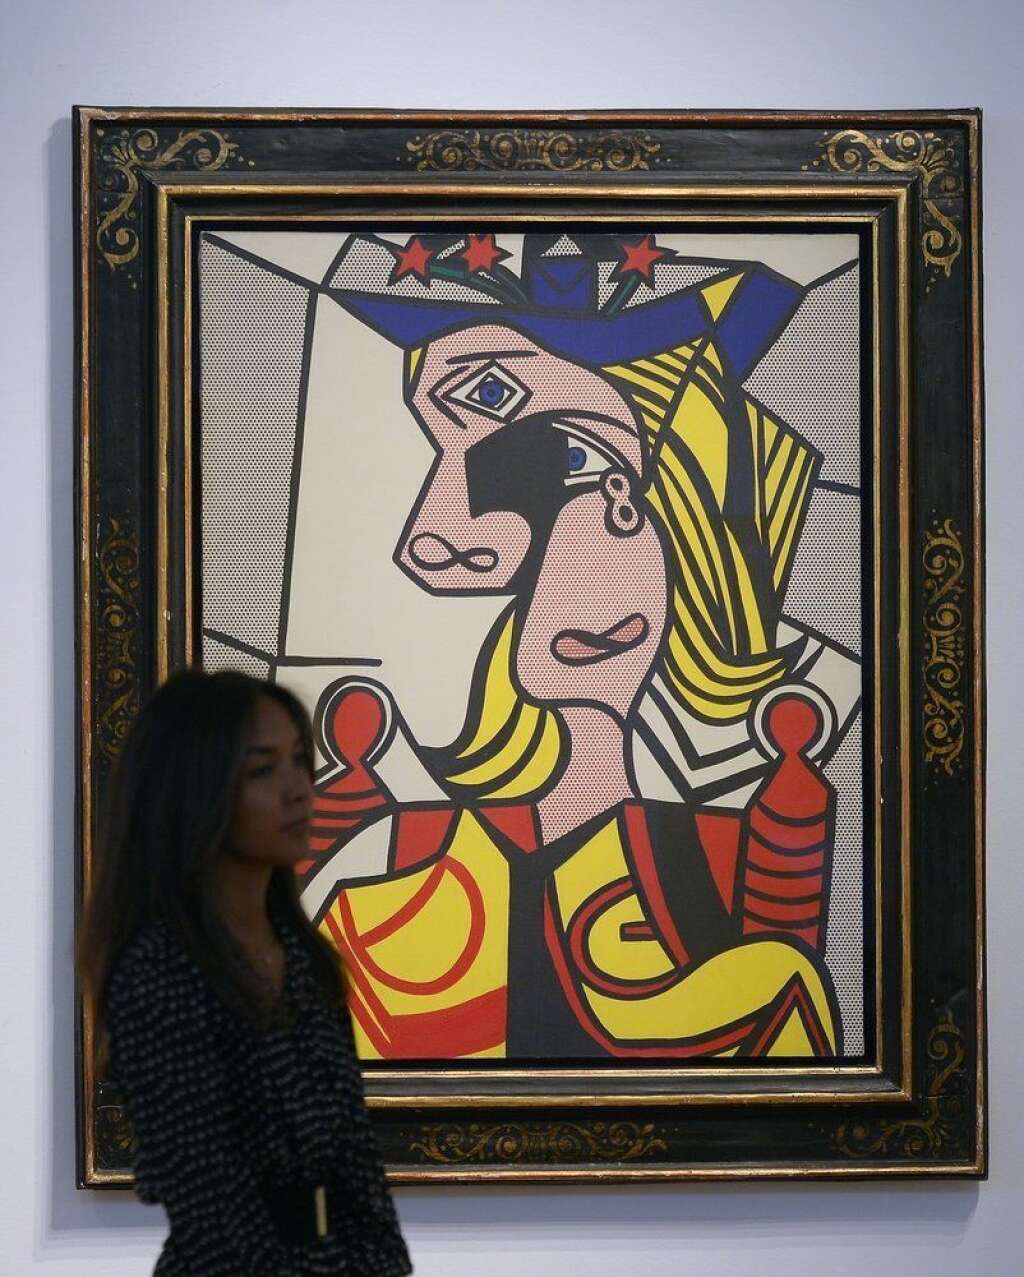 Roy Lichtenstein - "Woman with Flowered Hat" : 56,1 millions de dollars -